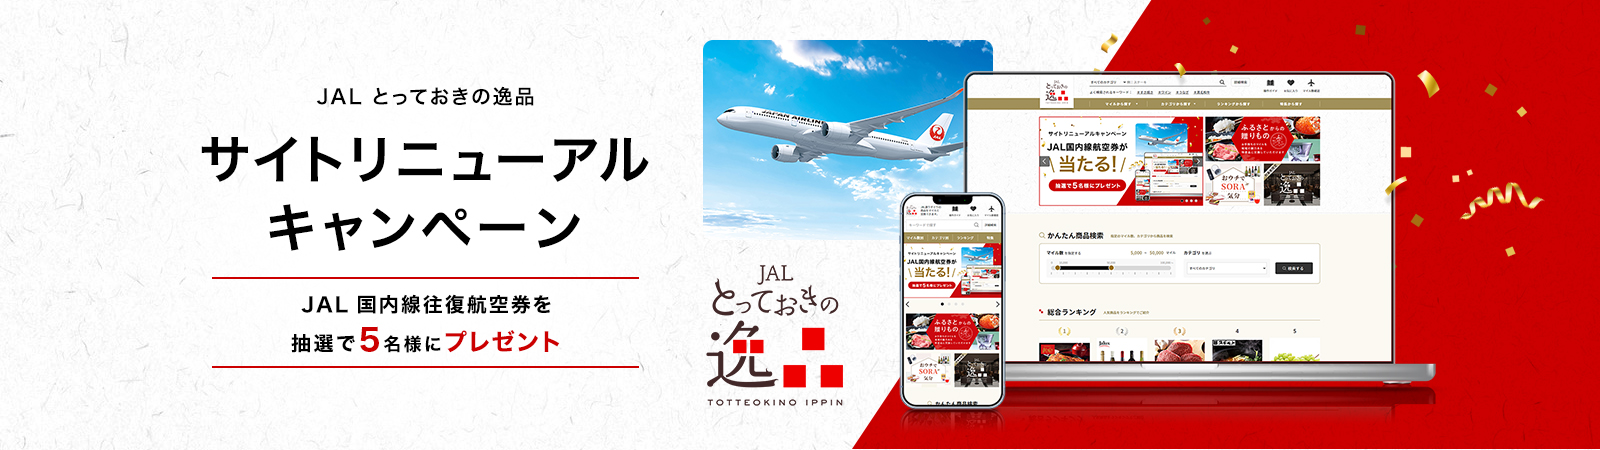 JAL とっておきの逸品 サイトリニューアルキャンペーン JAL国内線往復航空券を抽選で5名様にプレゼント